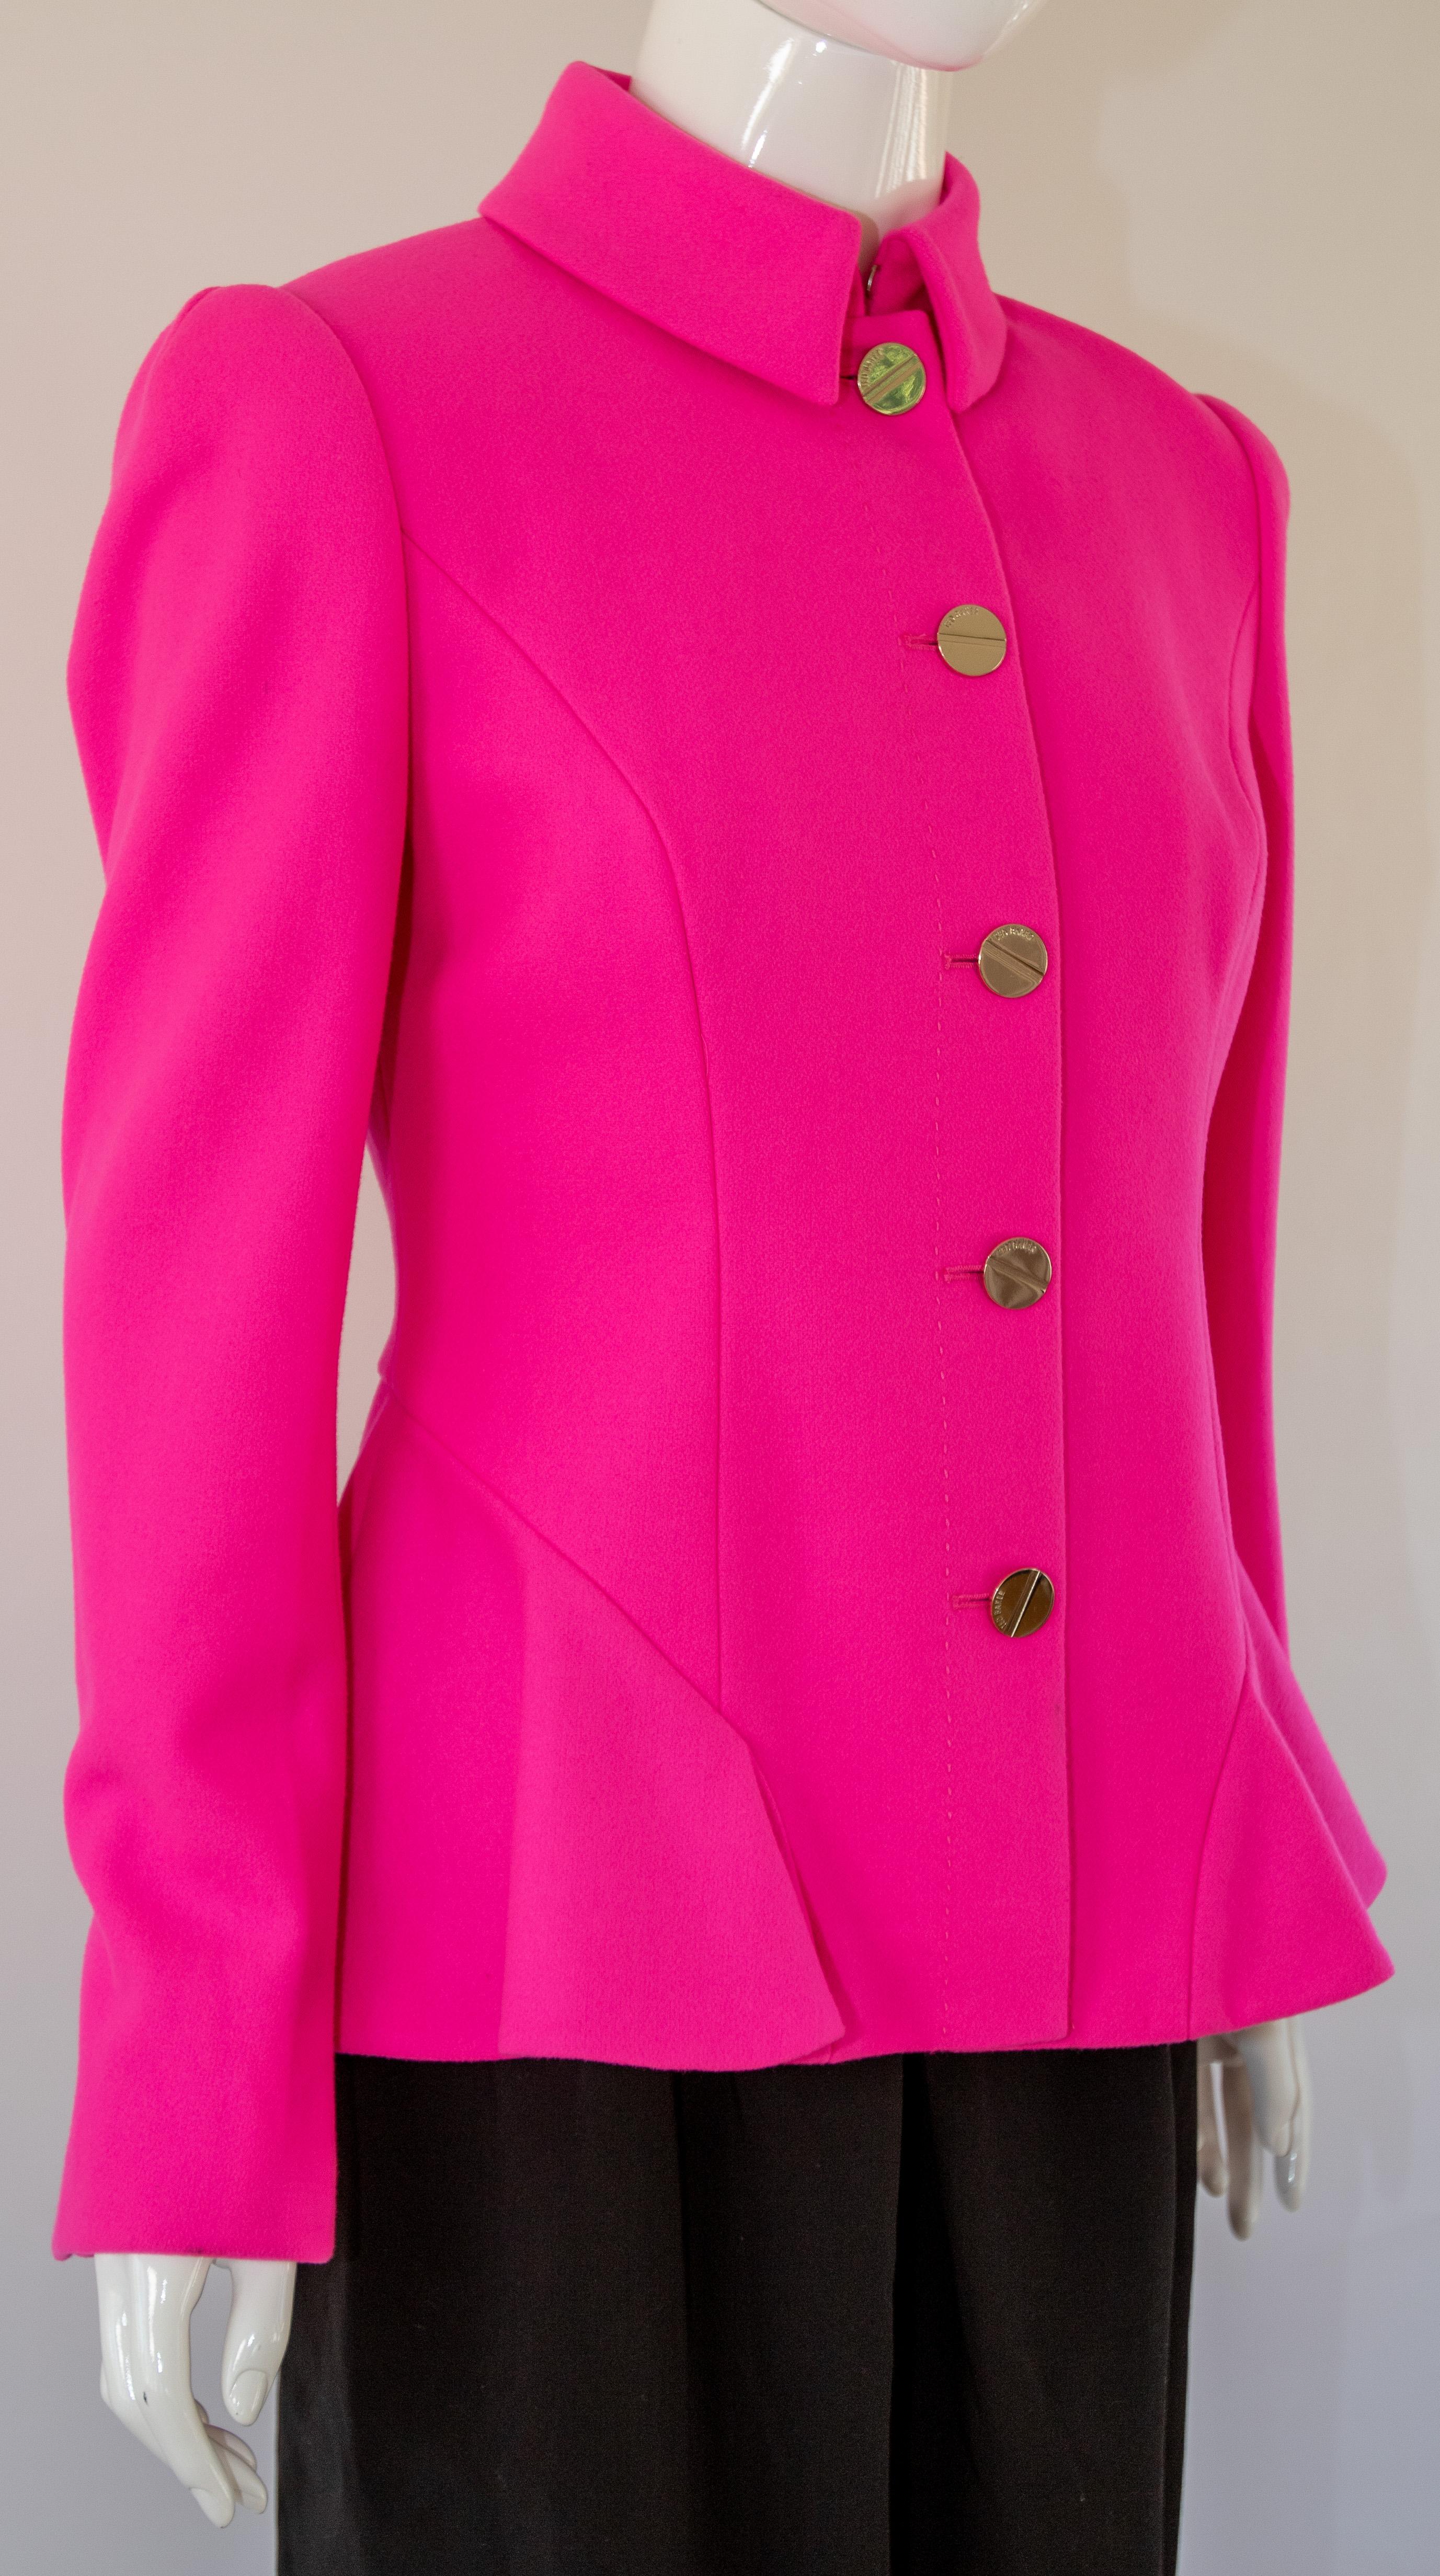 
Mit dieser pinkfarbenen Schößchenjacke von Ted Baker setzen Sie einen farbigen Akzent.
Kurzer Mantel aus einer Wollmischung mit Schößchen an der Taille und hochgeschlossenem Kragen. 
Mit goldenen Knöpfen der Marke Ted Baker und einem Futter mit